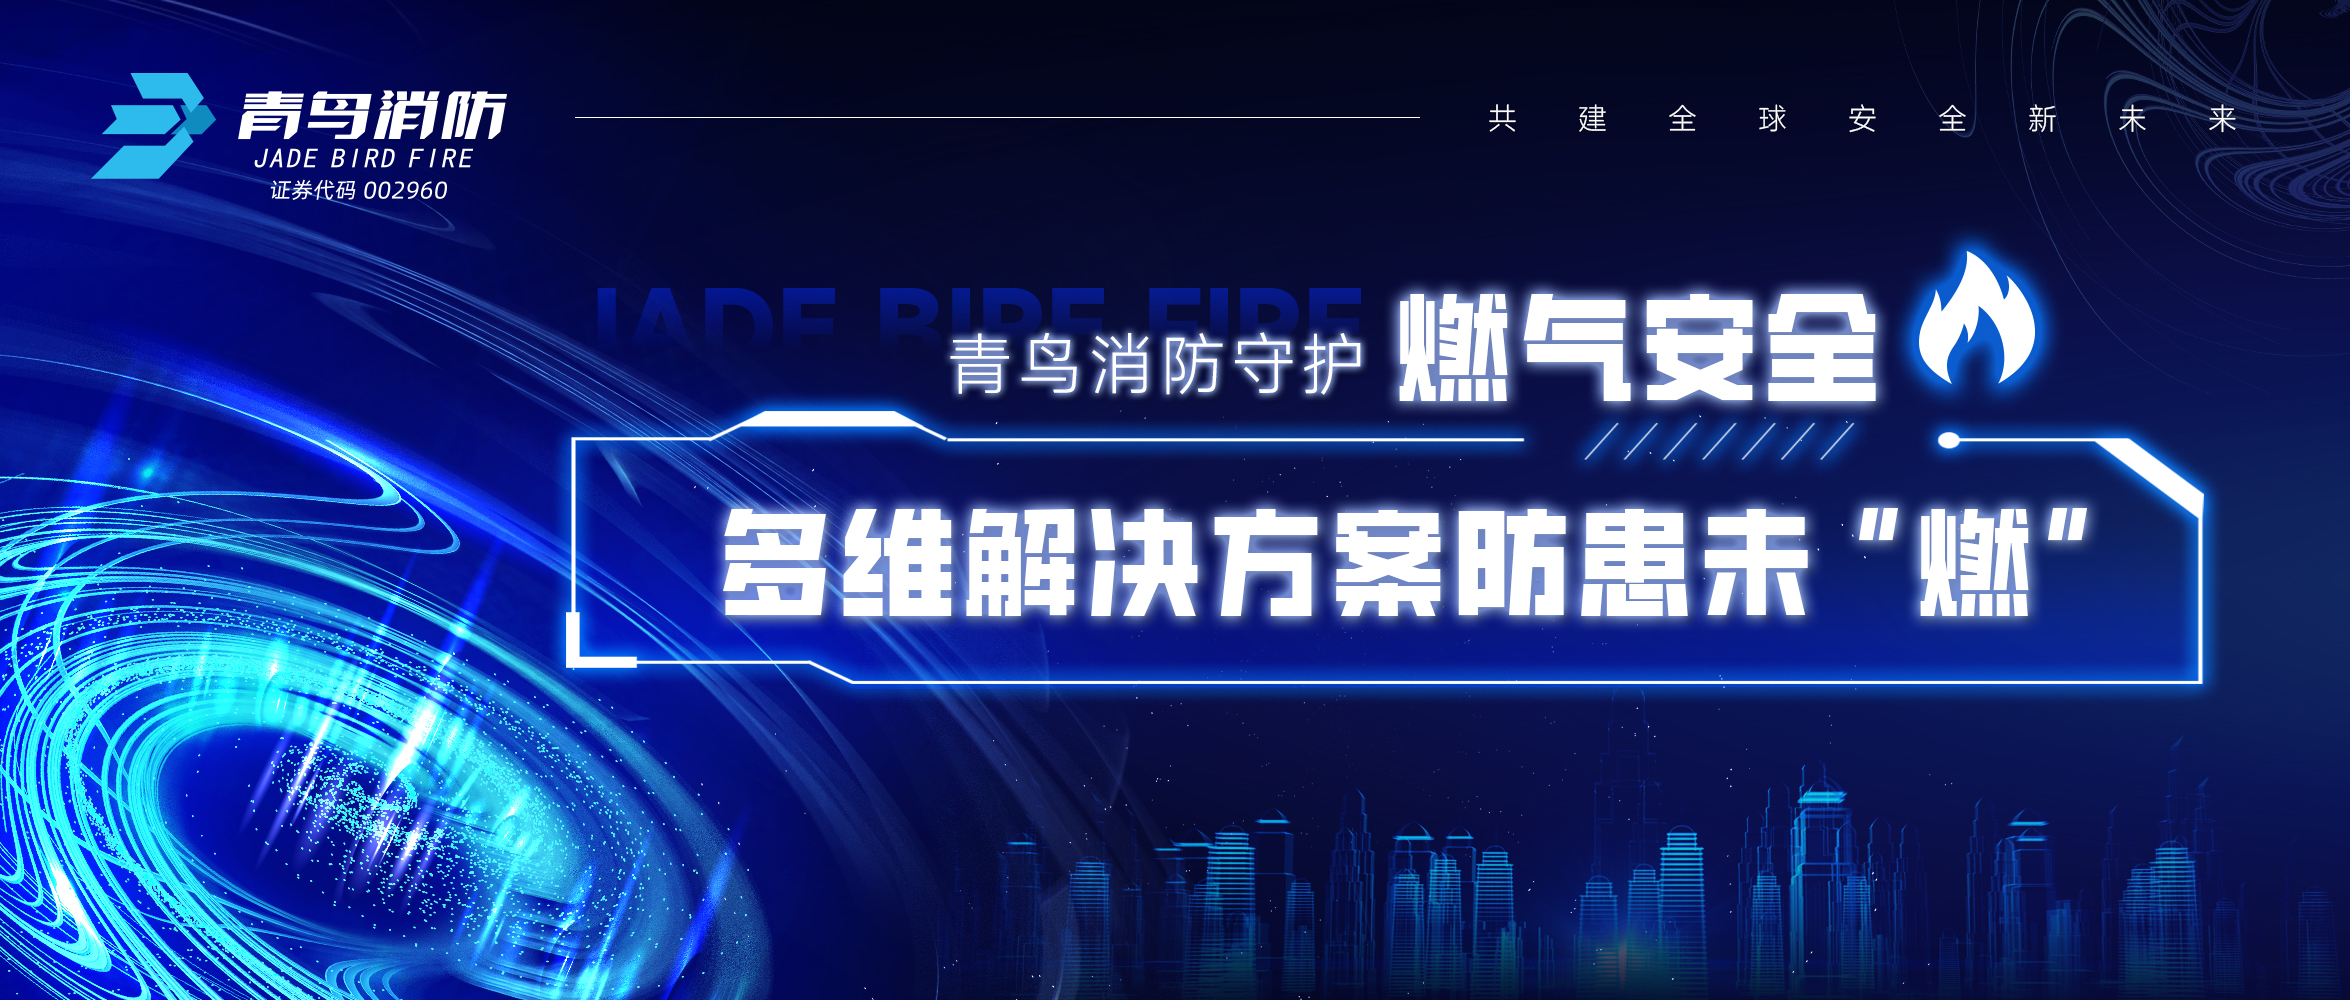 金年会（中国）app下载官网
消防守护燃气安全，多维解决方案防患未“燃”